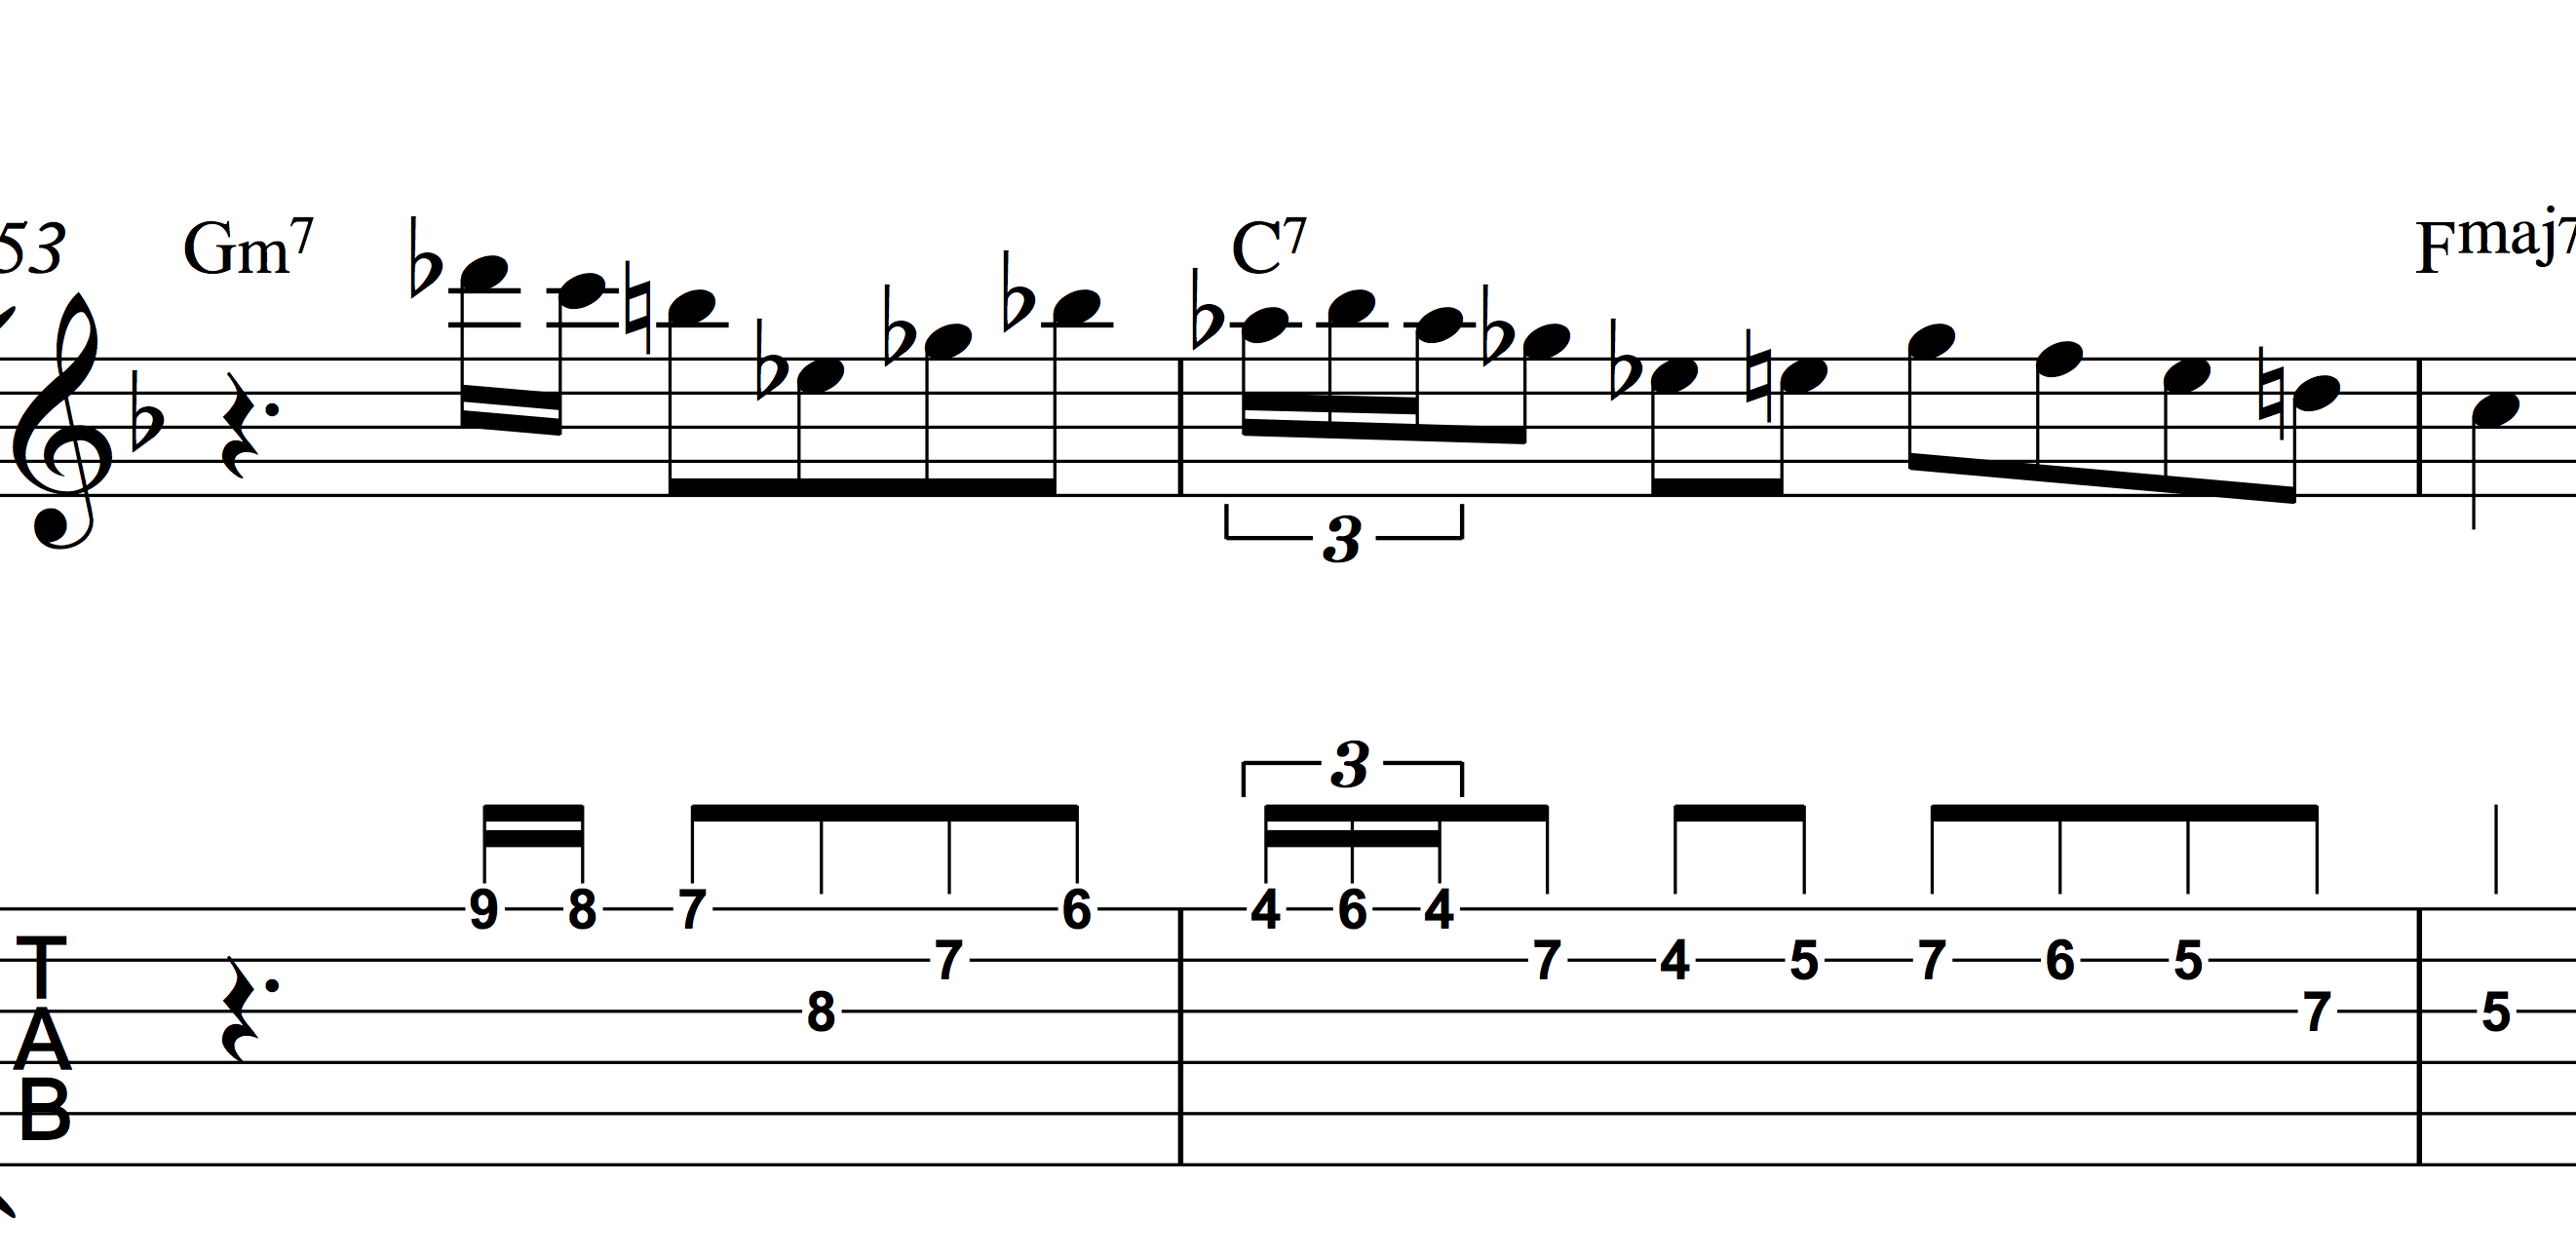 Trascrivere Charlie Parker. Guitar Prof.
Fraseggio bebop sul II V I in tonalità di F maggiore. 